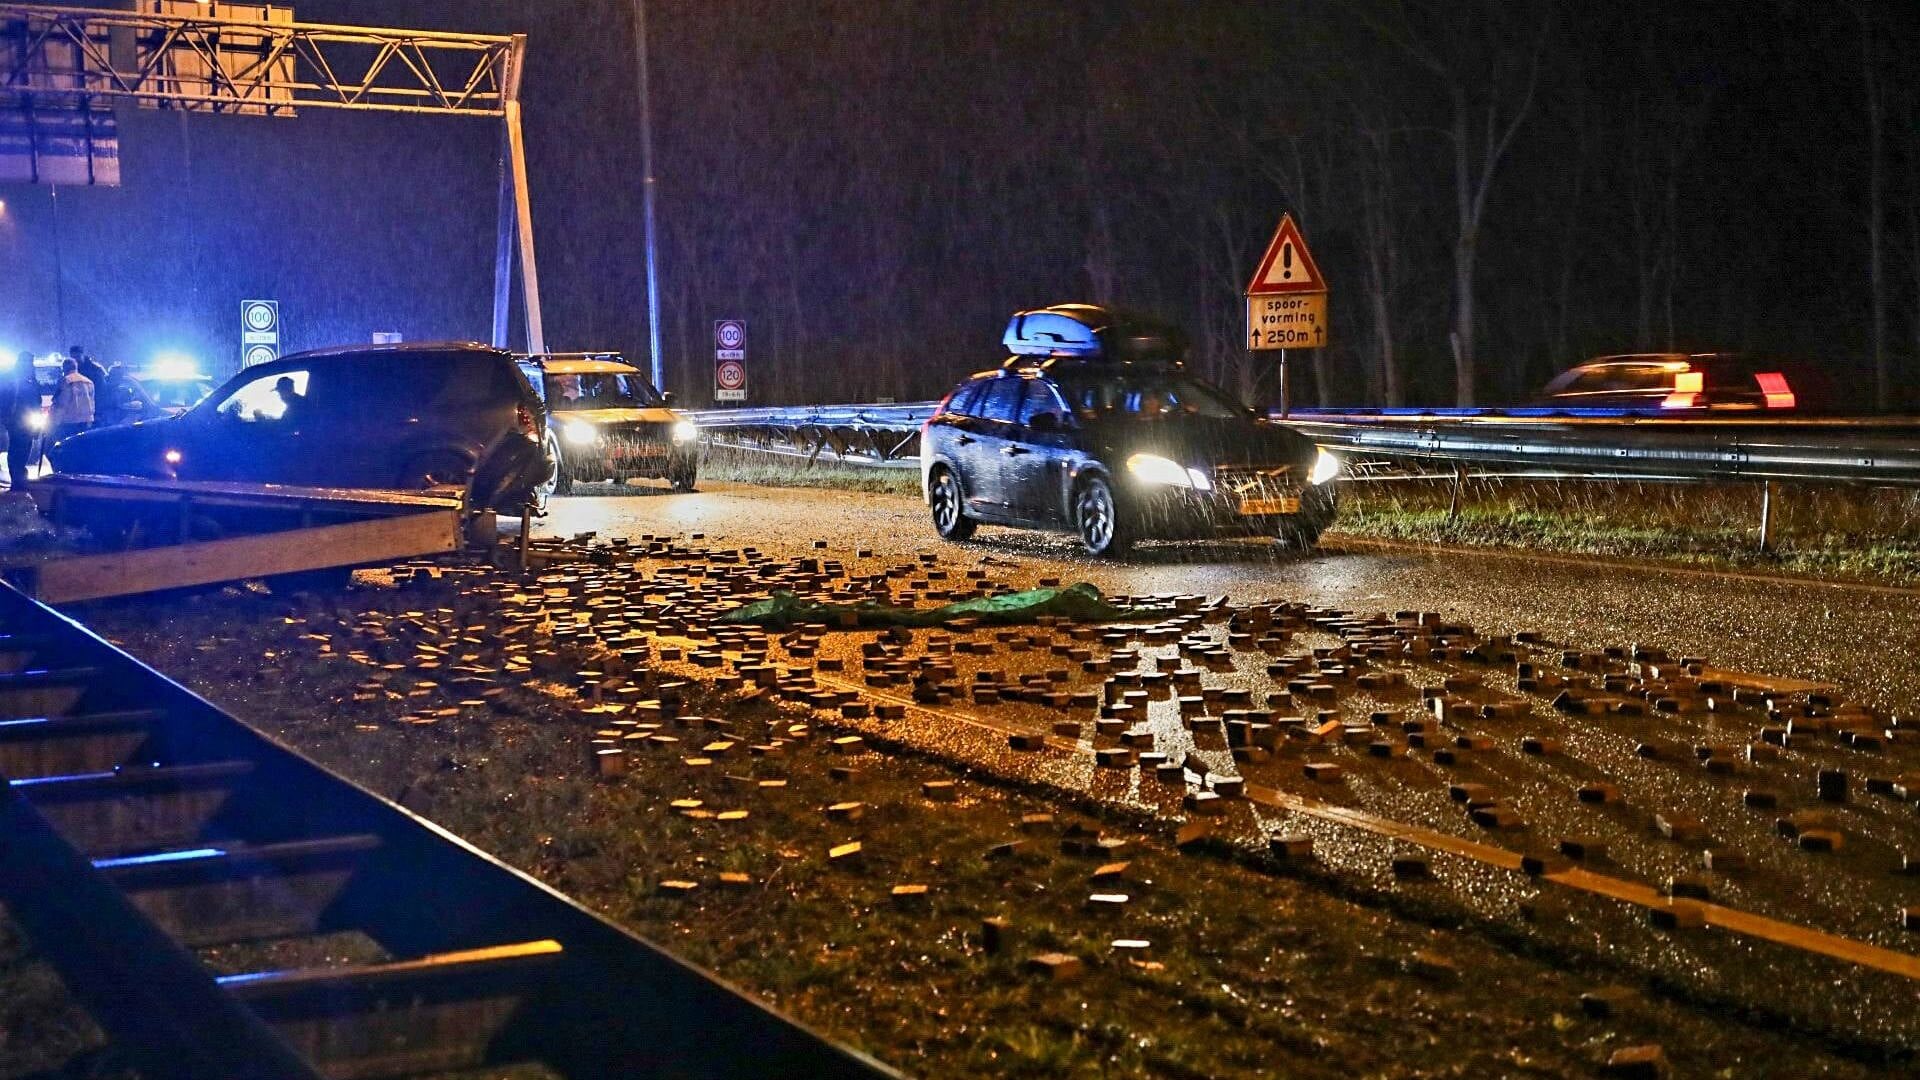 De snelweg ligt bezaaid met stenen nadat een auto z'n lading verloor.